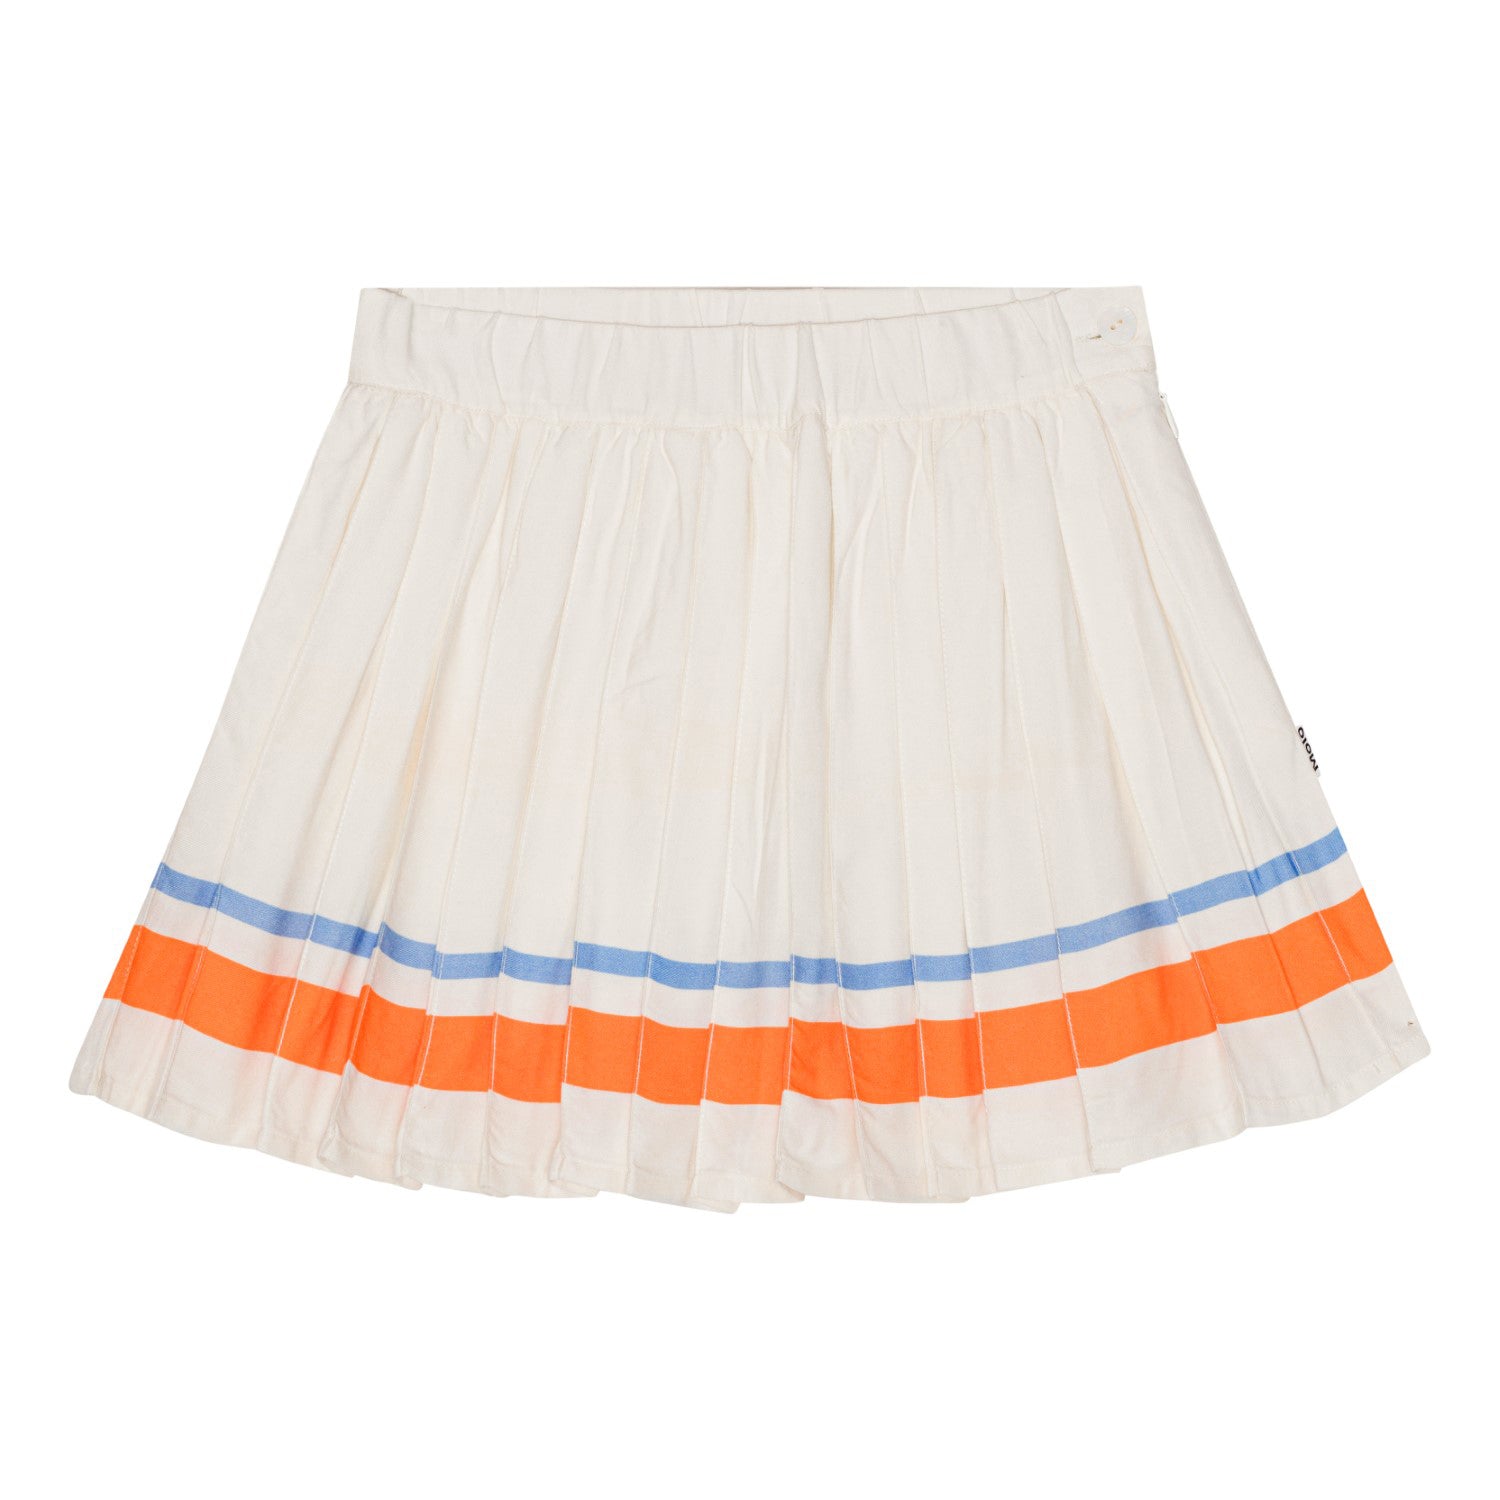 Blanka Skirt